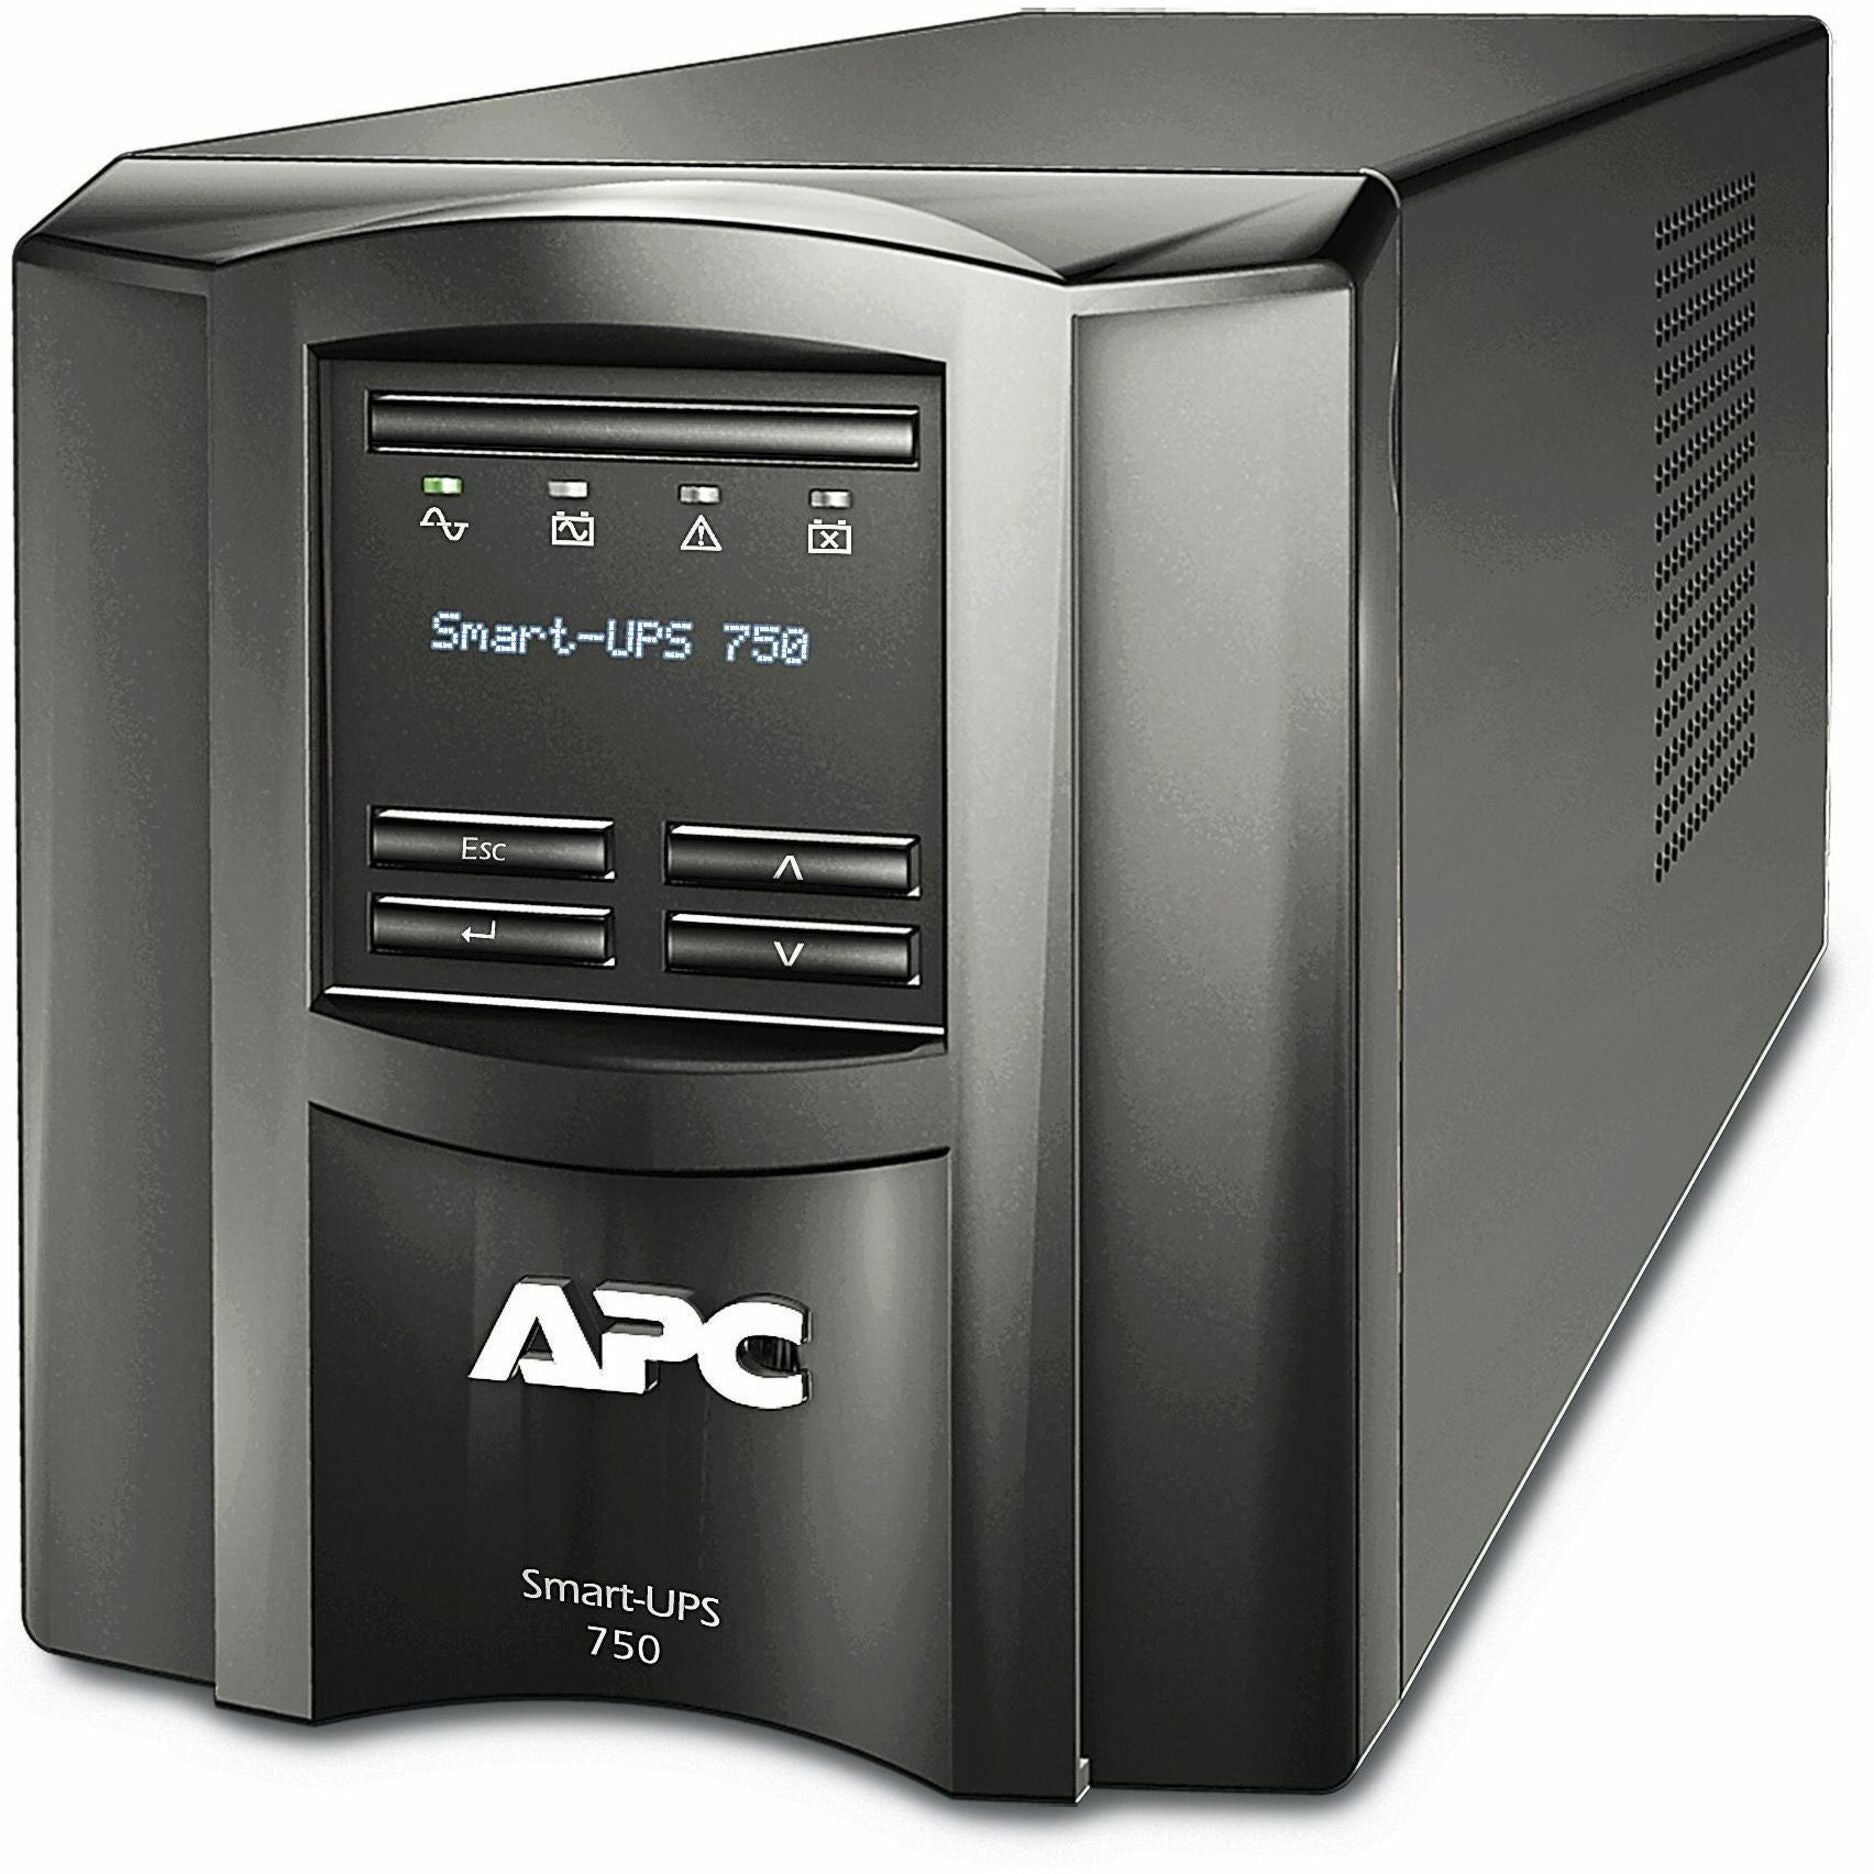 APC SMT750X93 Smart-UPS 750VA Tower UPS, 3-Year Warranty, 500W Load Capacity